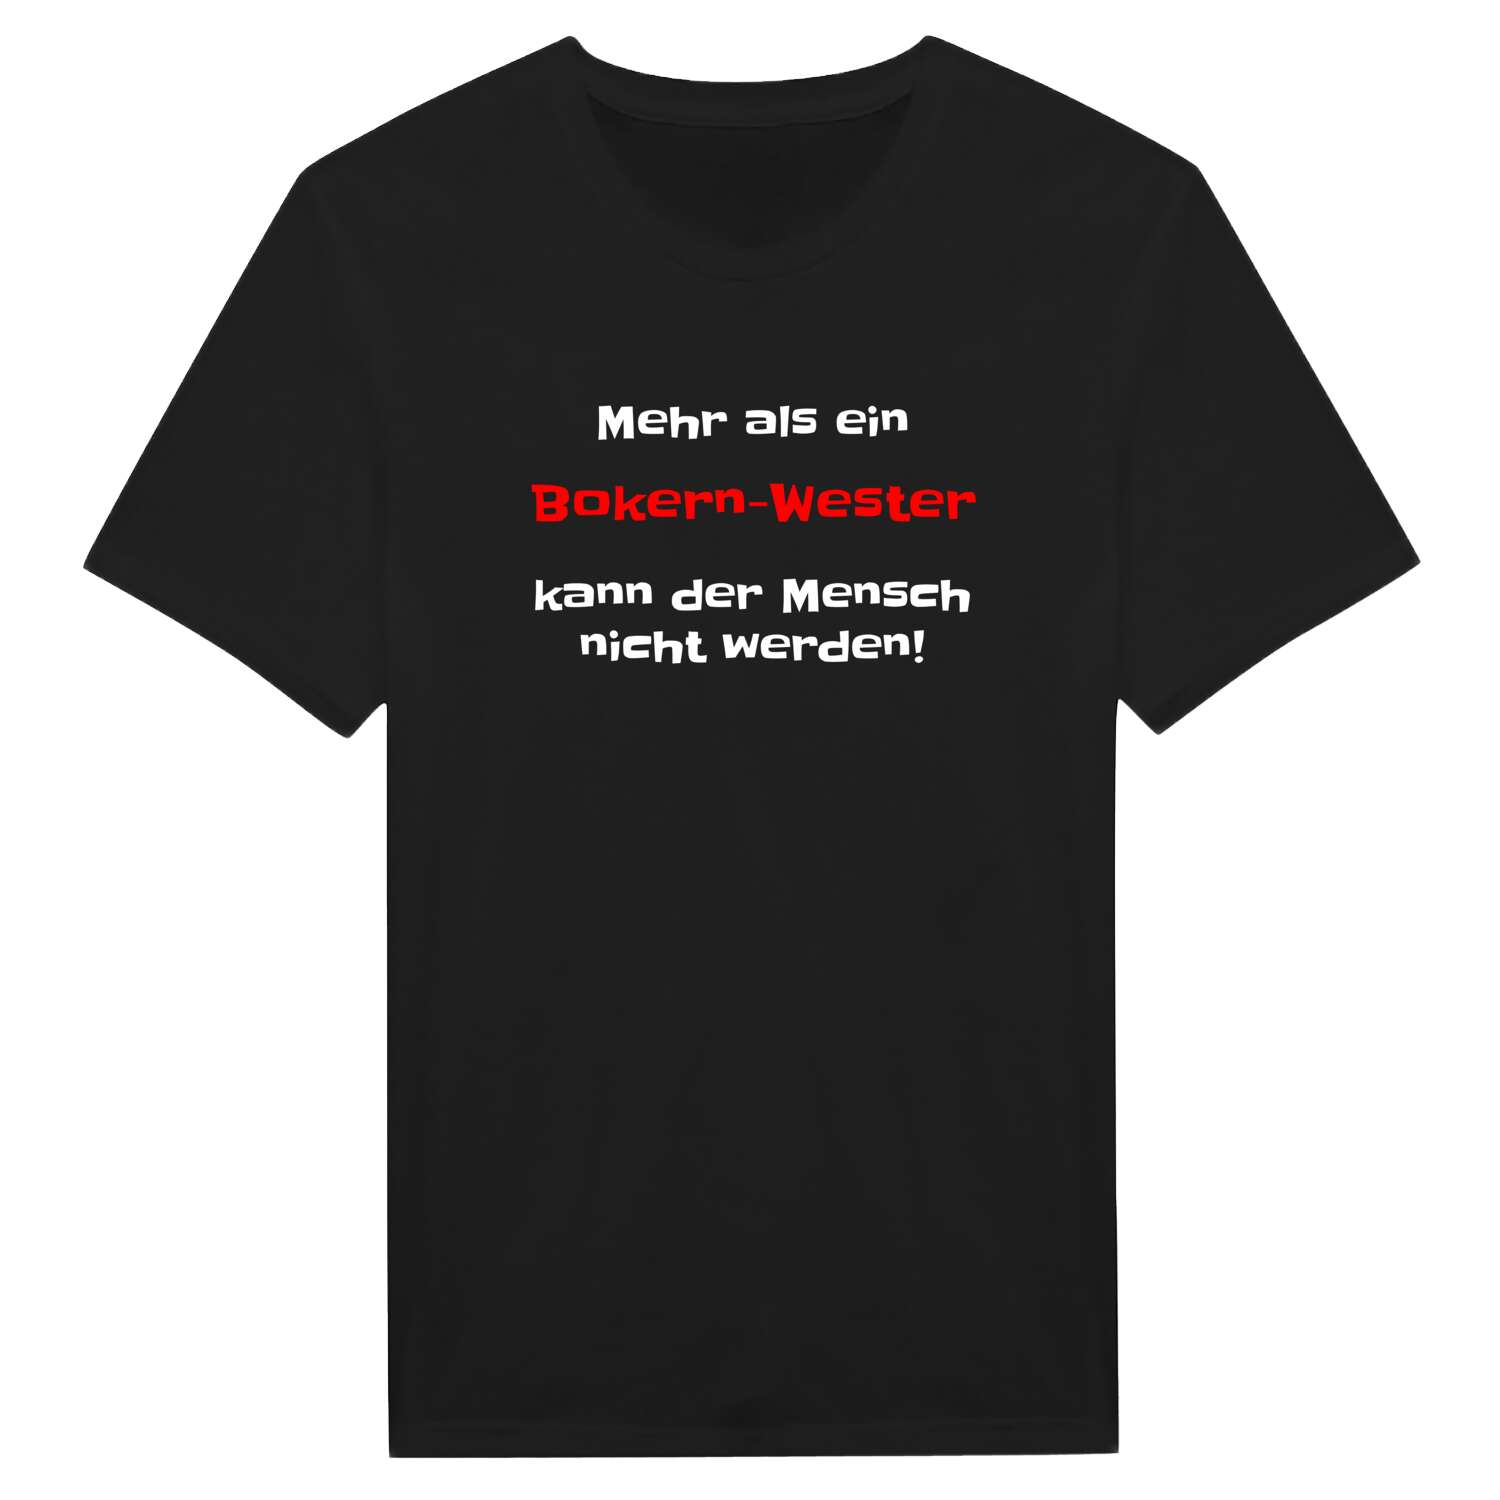 Bokern-West T-Shirt »Mehr als ein«